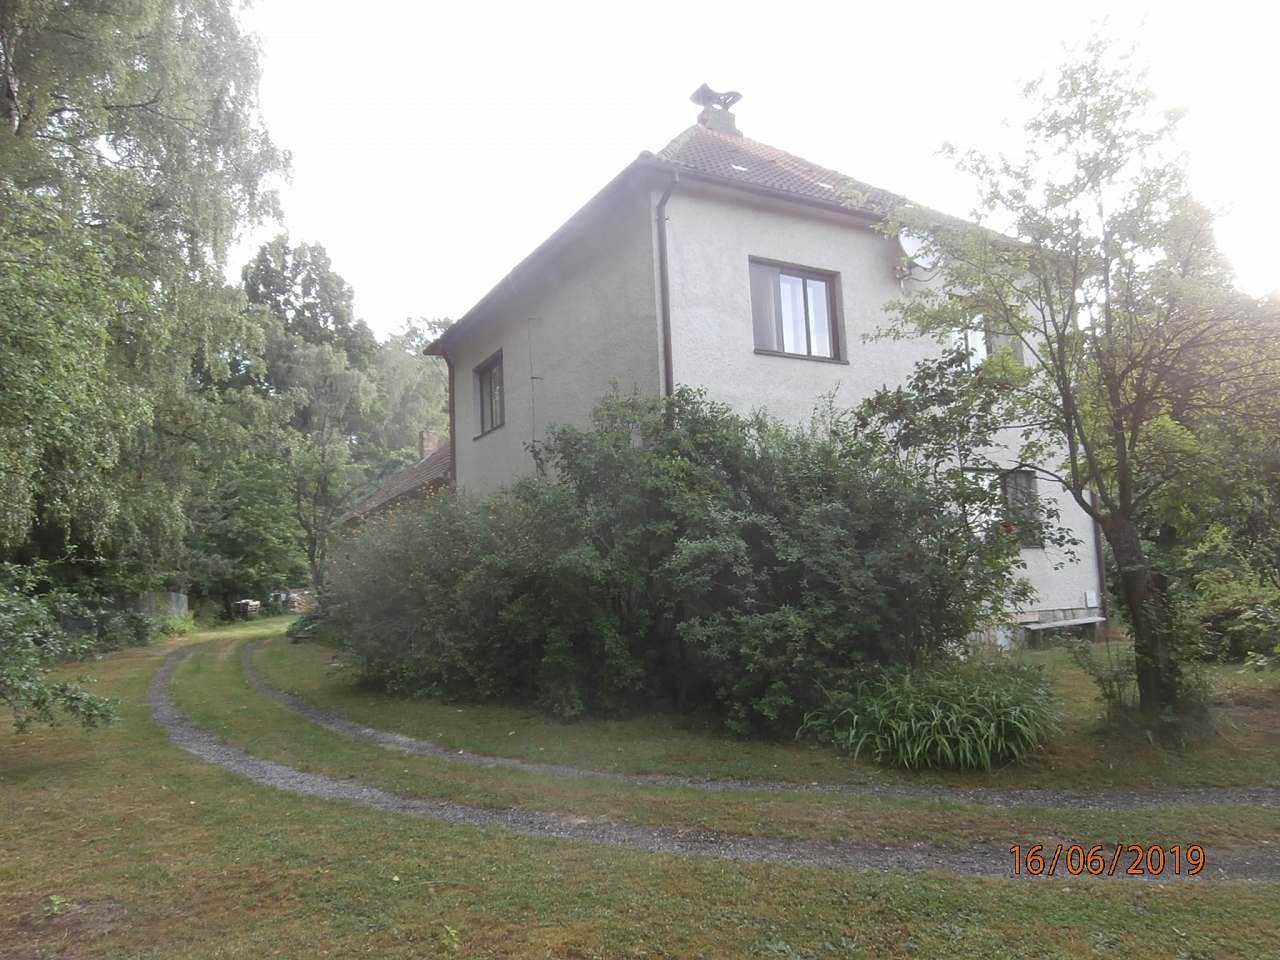 Cottage Hluboká in de buurt van Bor. 2